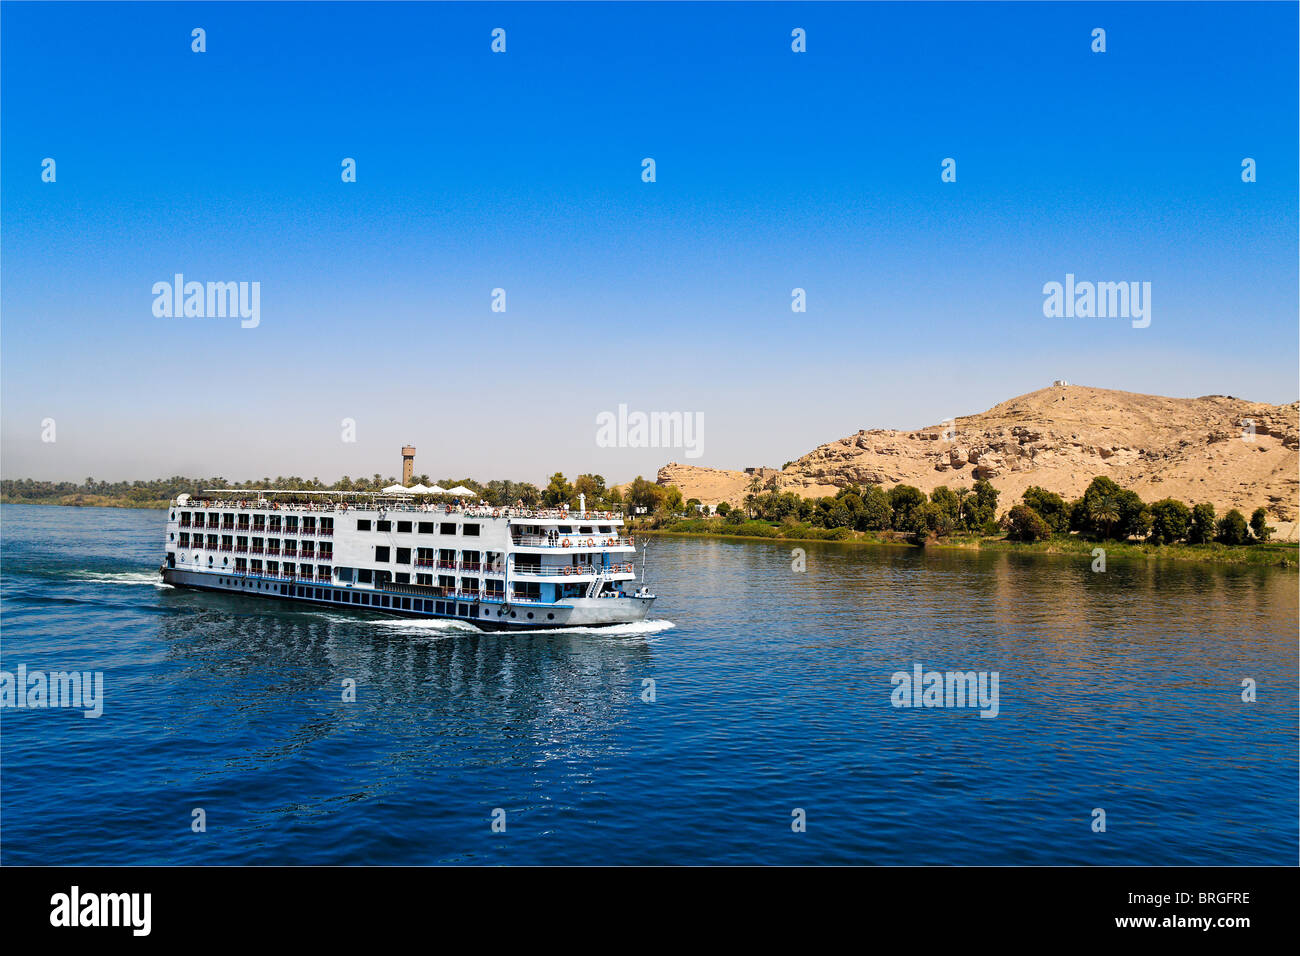 Une croisière sur le Nil est commun dans le cadre d'un voyage en Egypte Banque D'Images